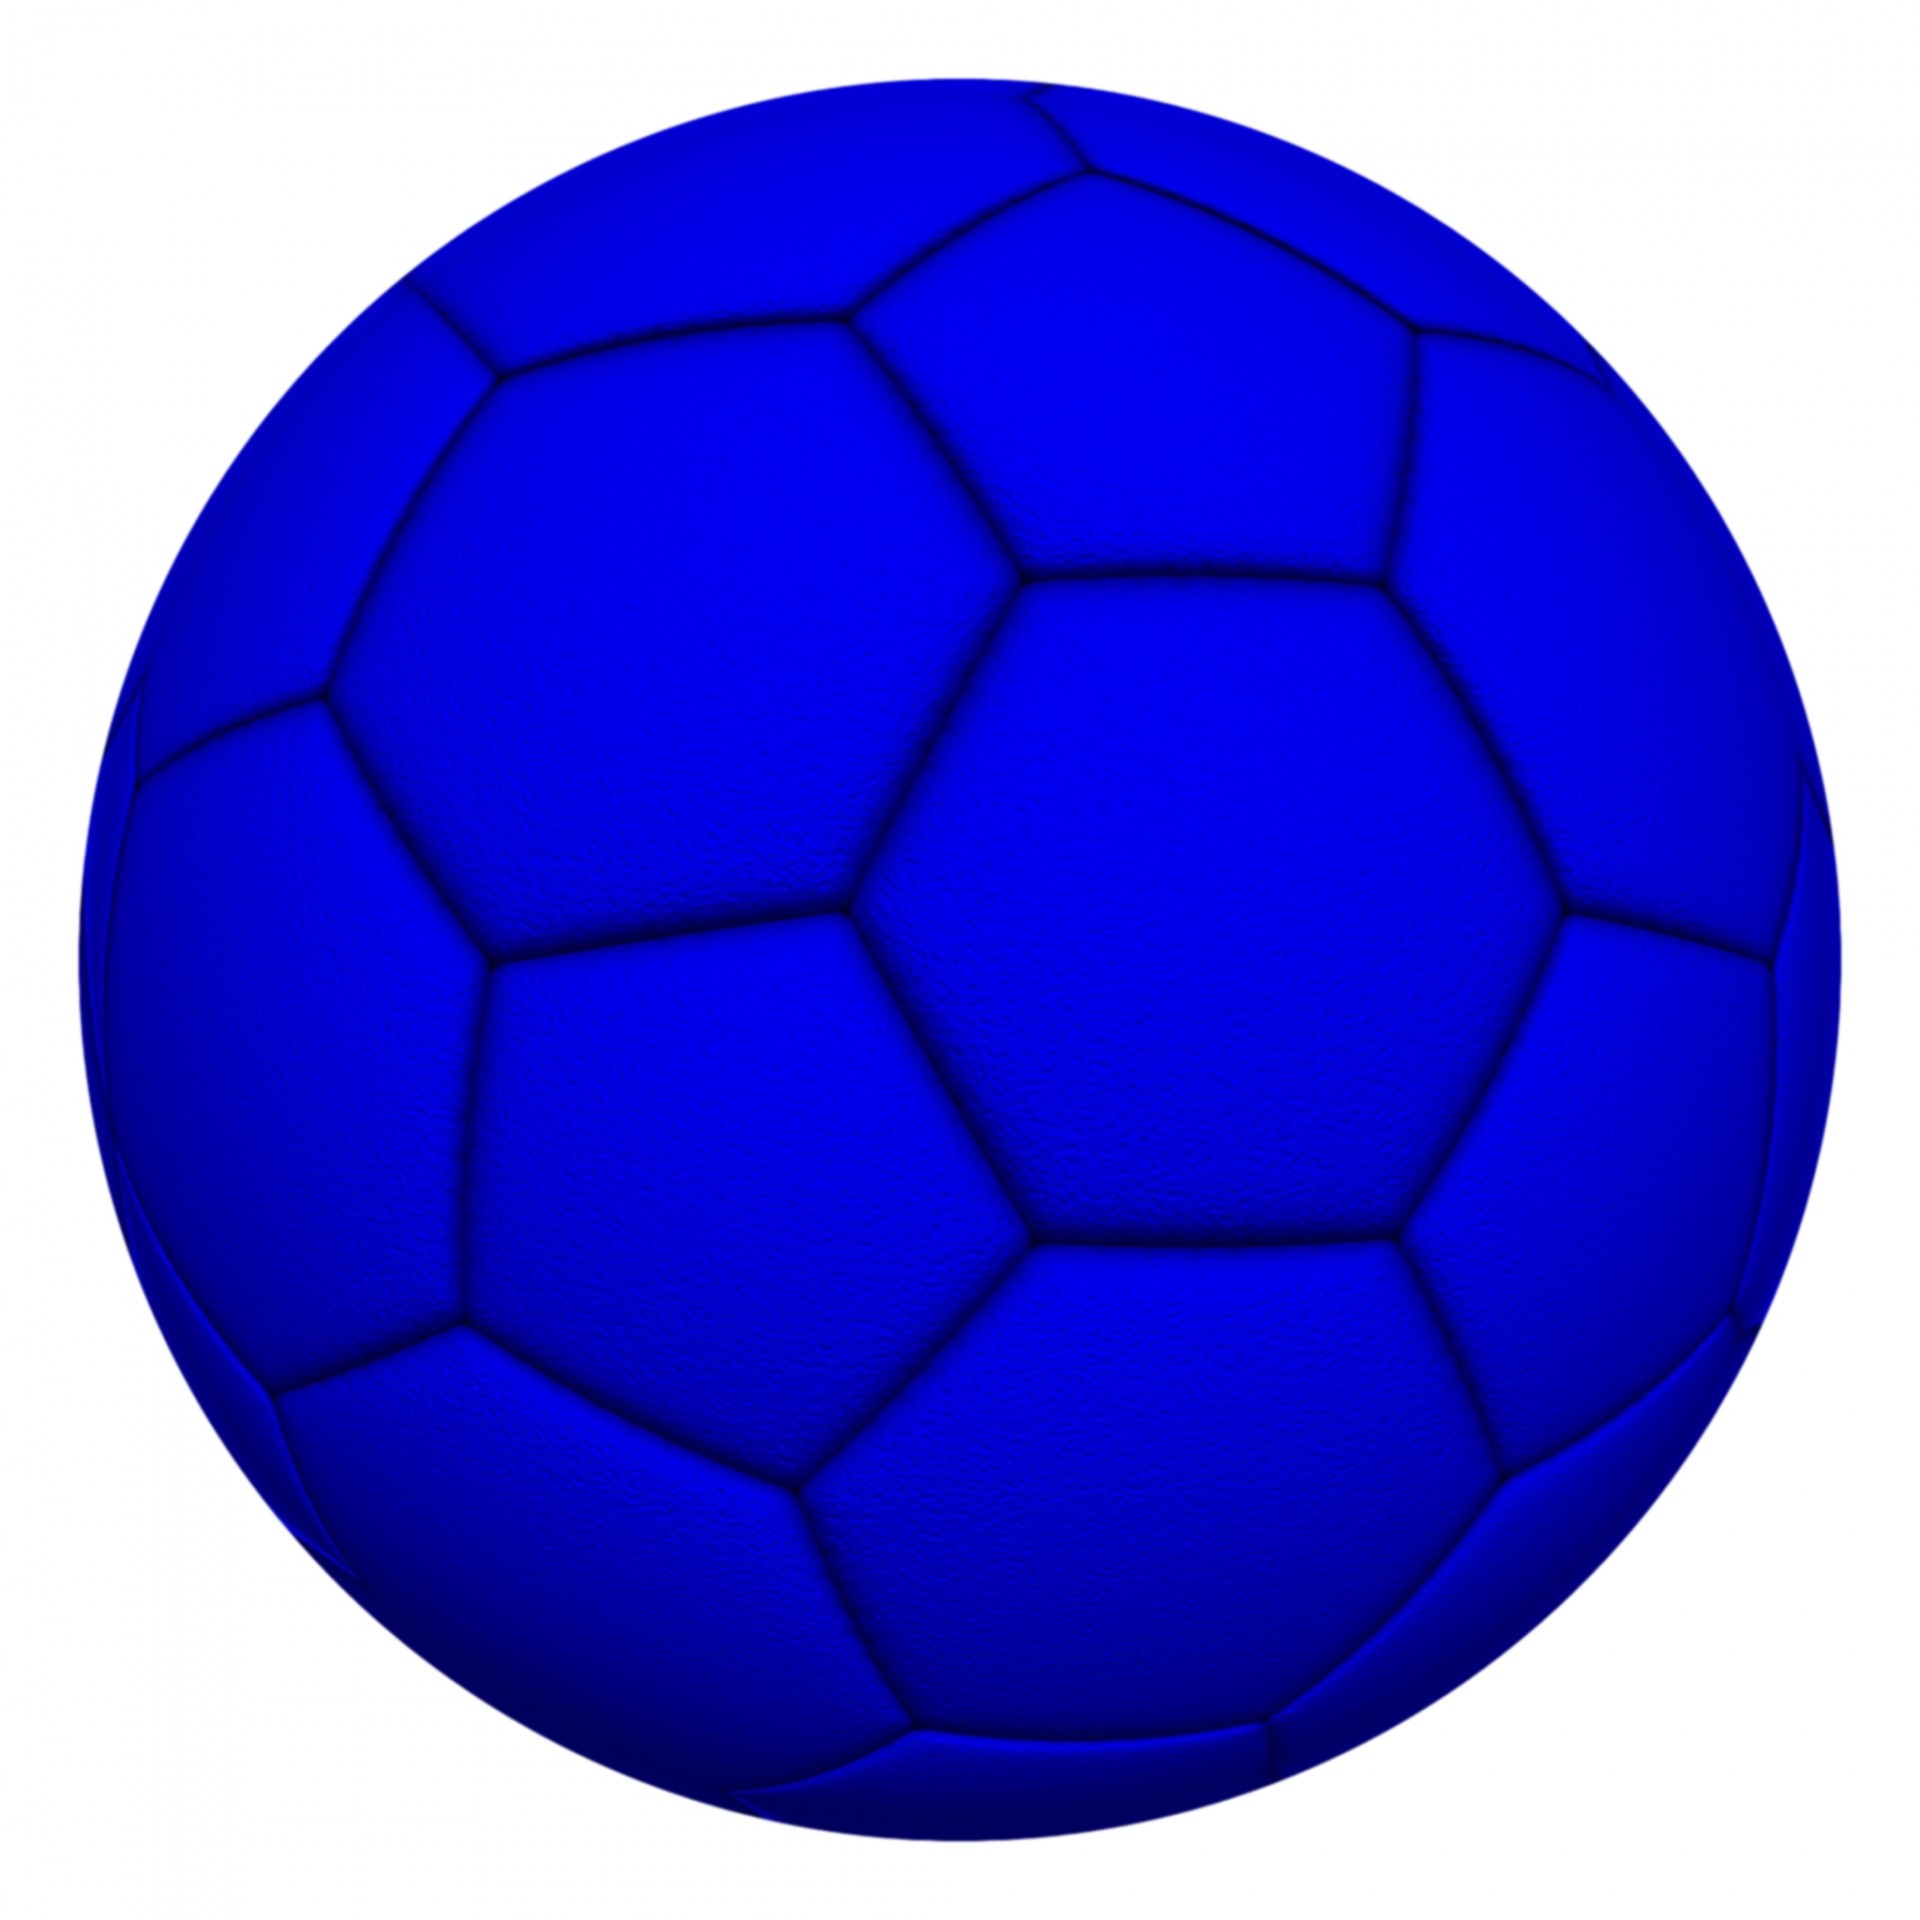 Blueballsoccer ballclipartfootball free.